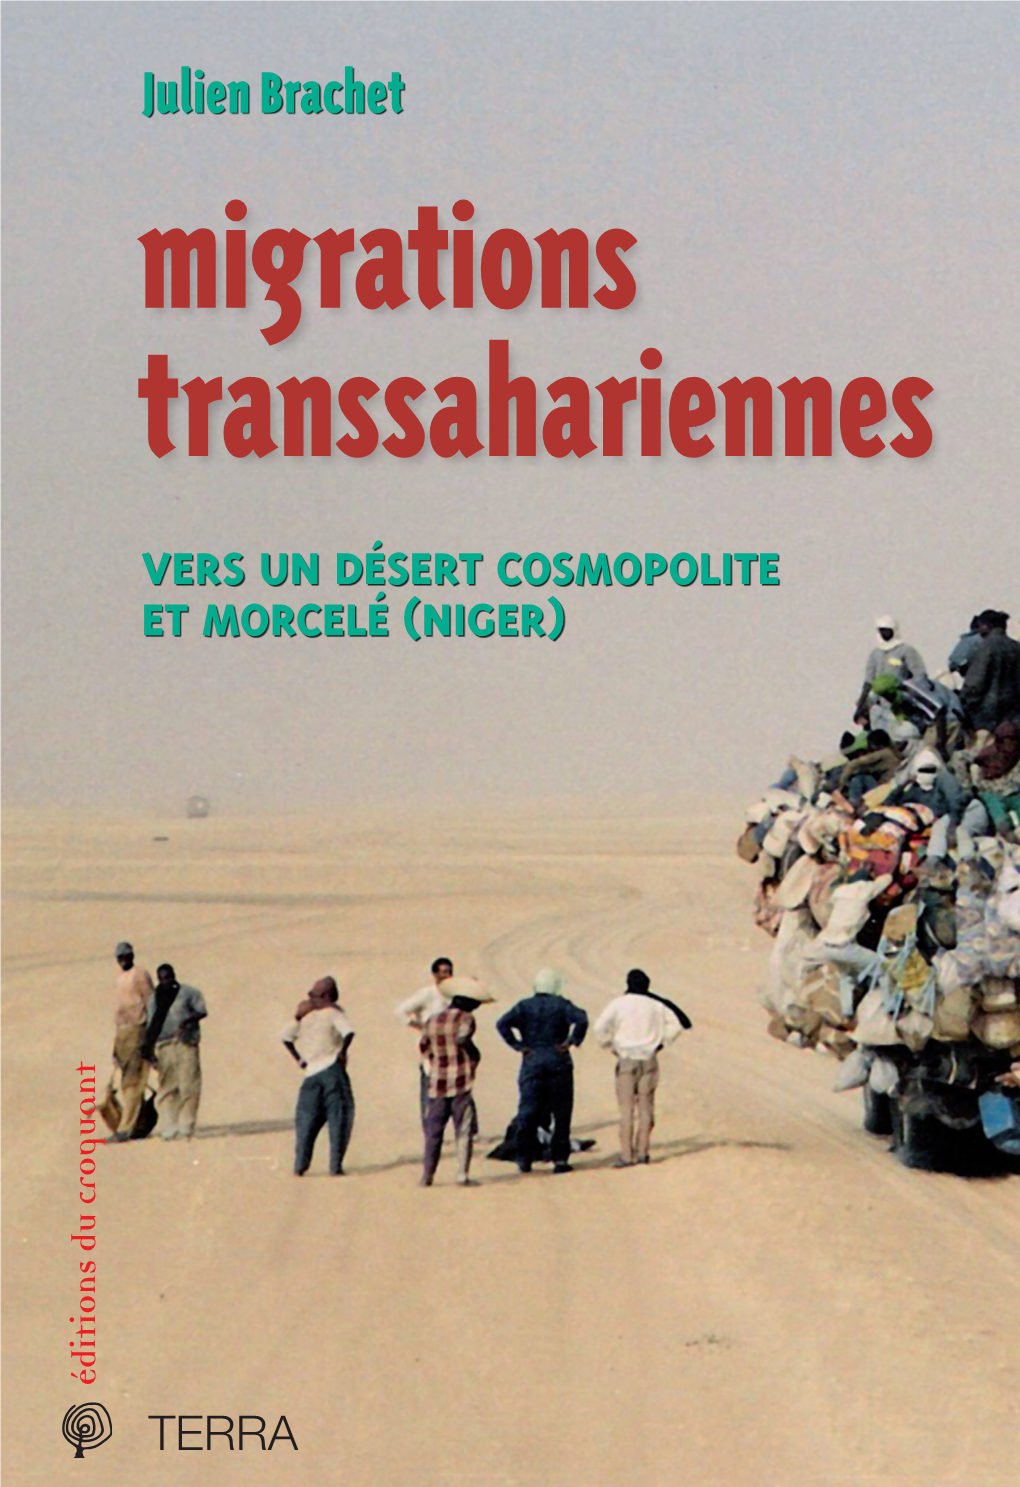 Julien Brachet Dtraversent Le Sahara Central Focalisent L’Attention Des Médias Et Des Pouvoirs Publics, Tant En Afrique Qu’En Europe